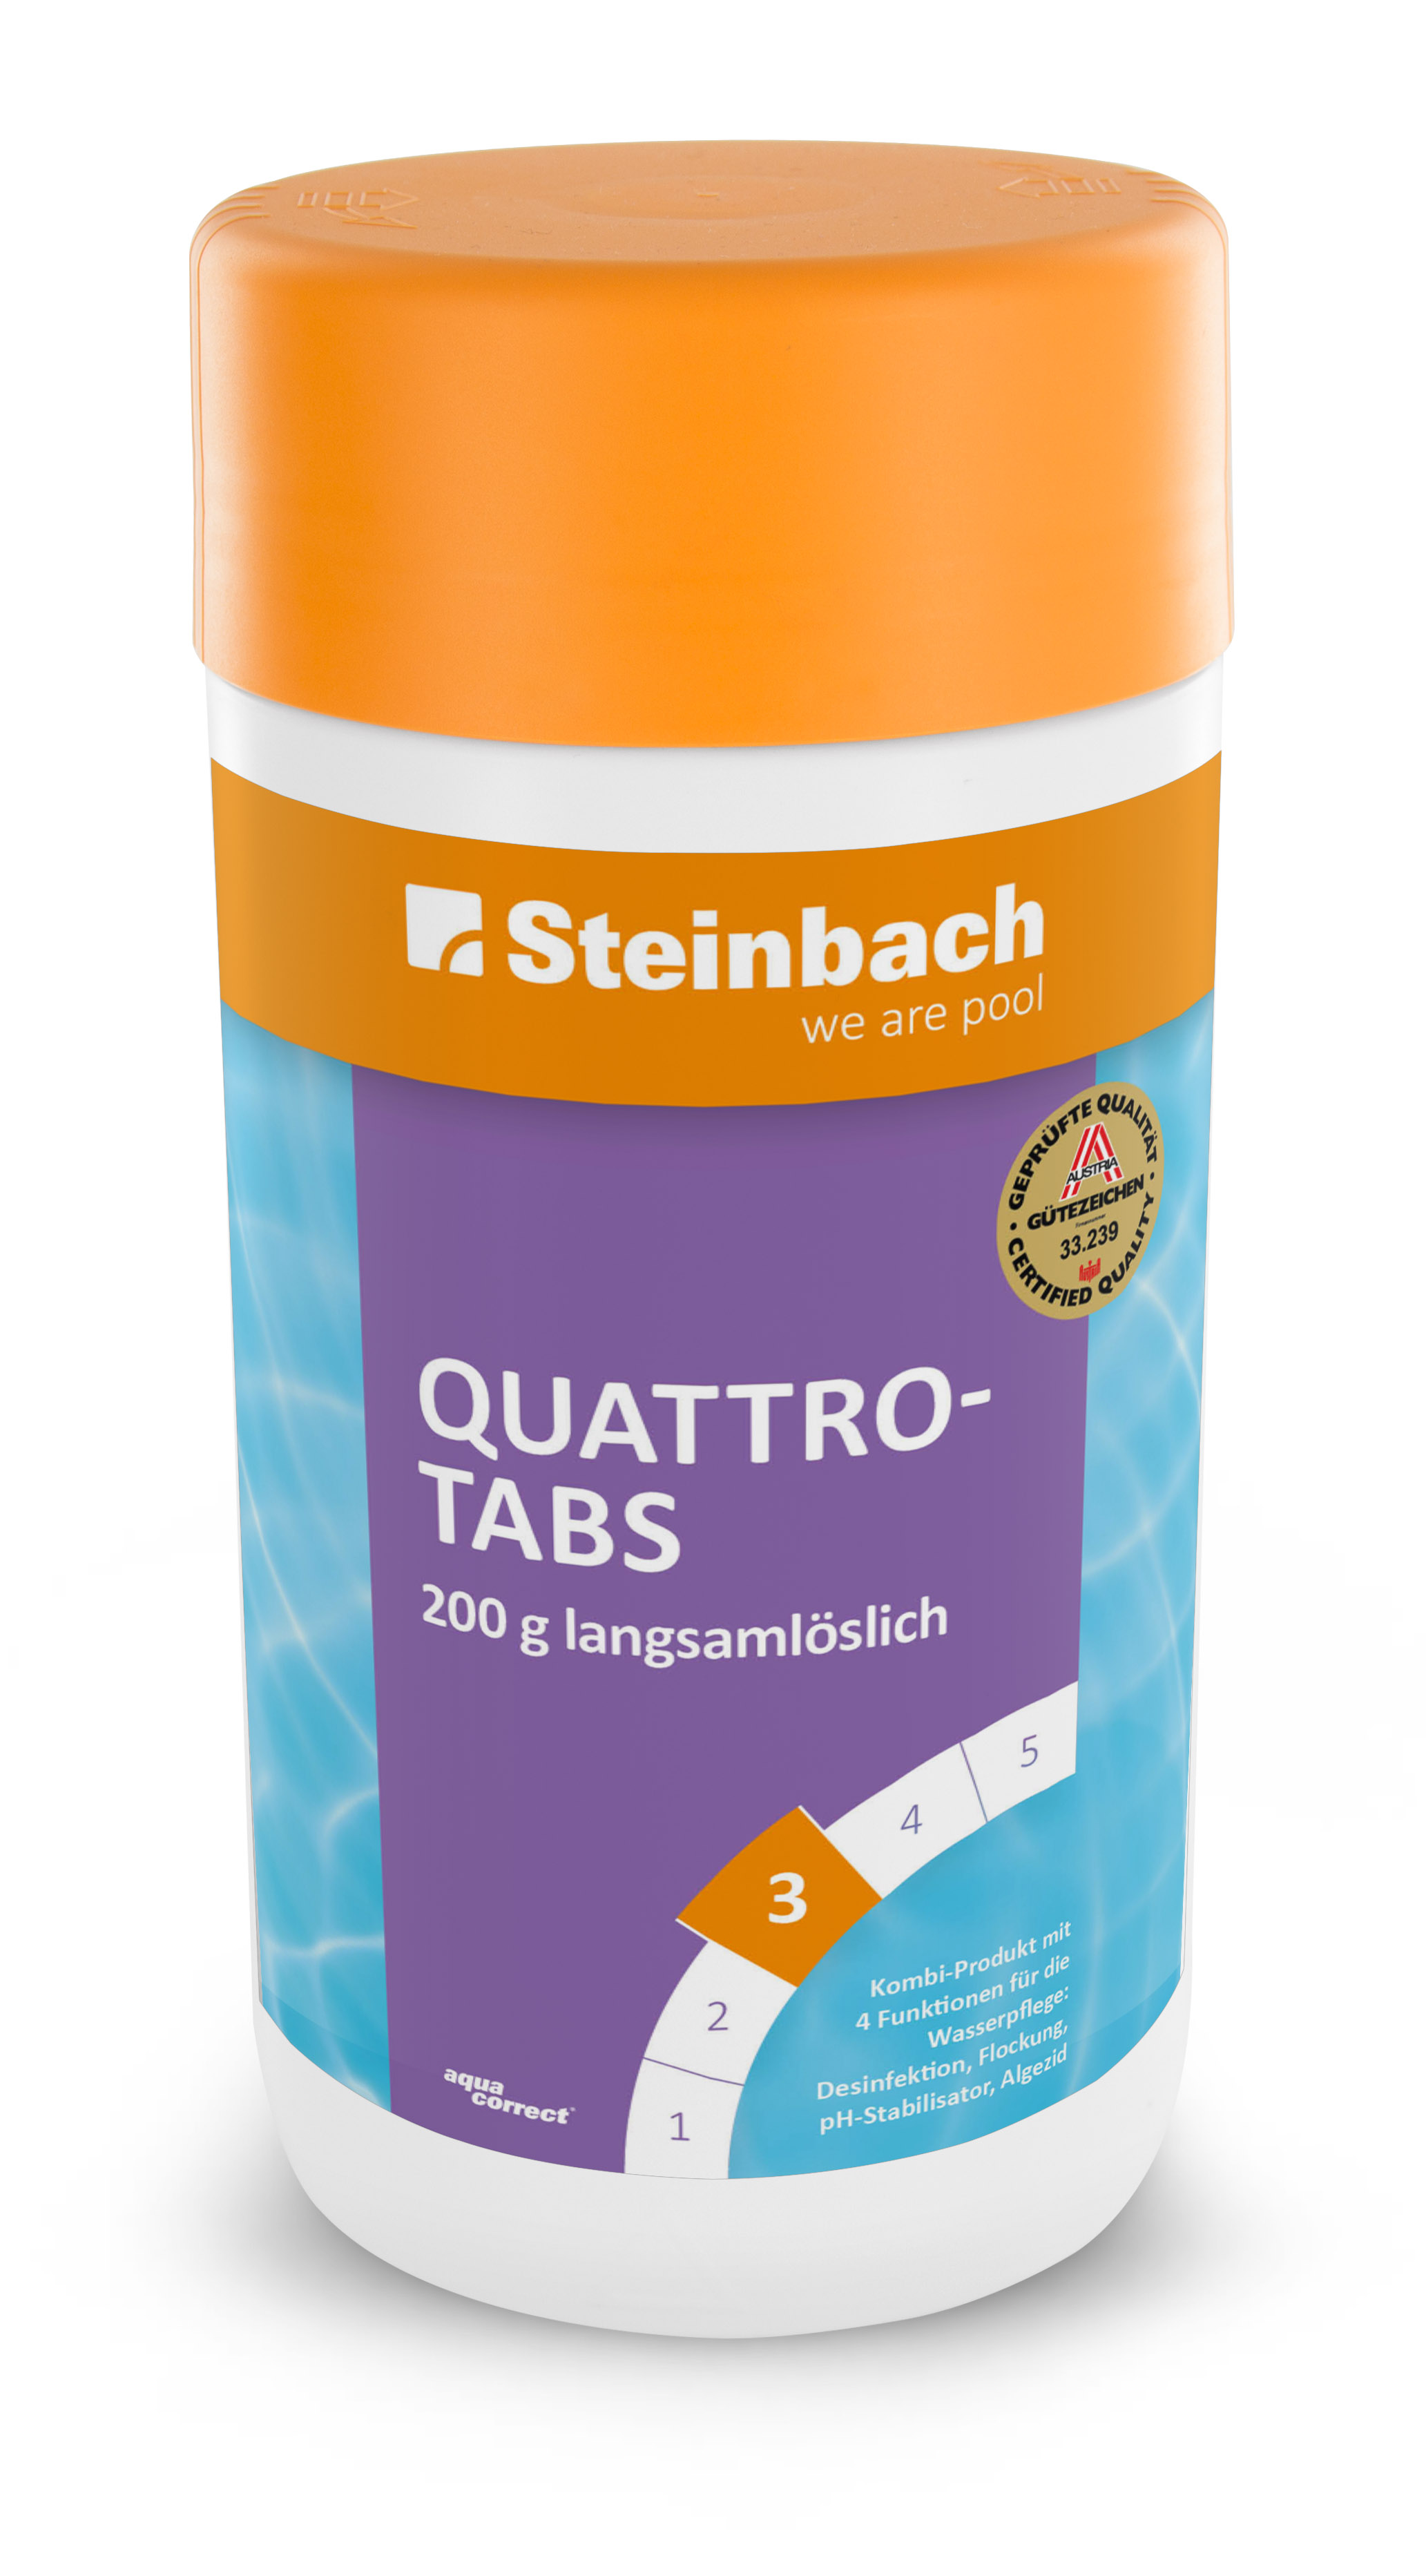 Steinbach Quattrotabs 200 g langsamlöslich, 1 kg